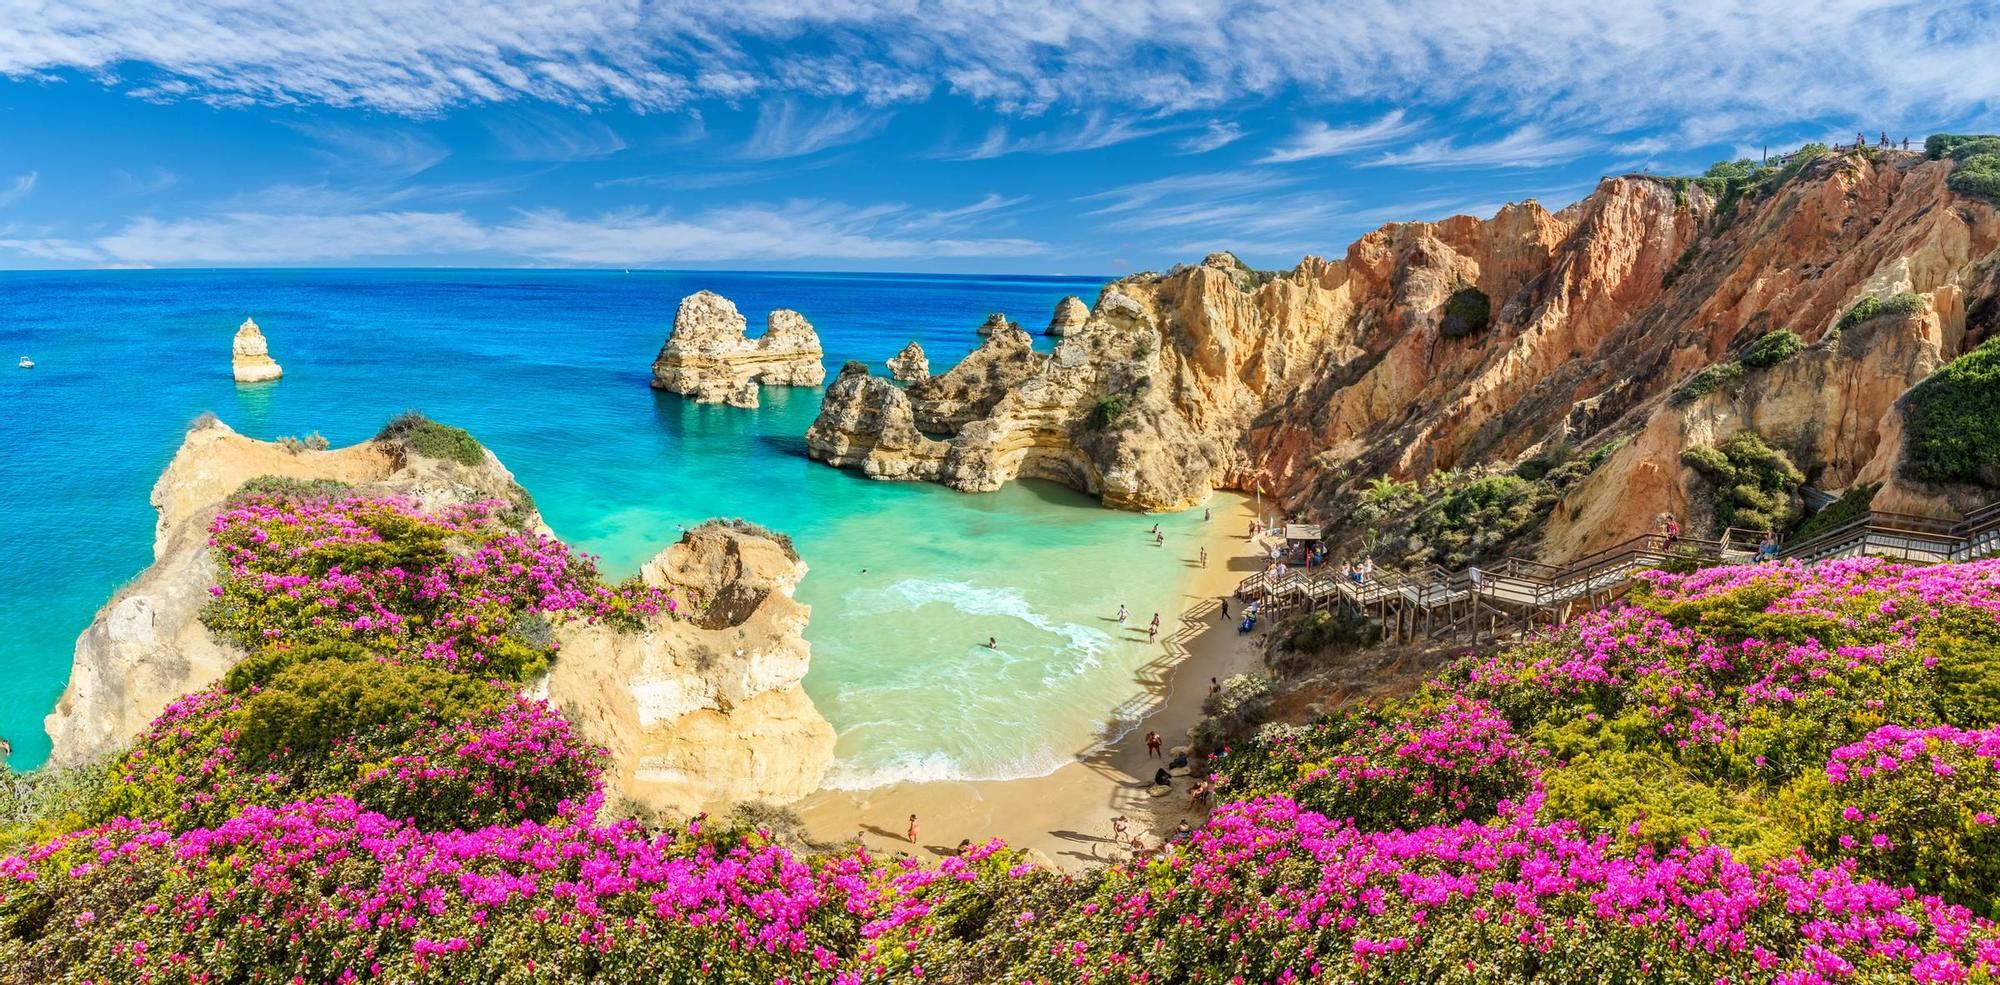 En el Algarve descubrirás bellísimas playas y rincones únicos